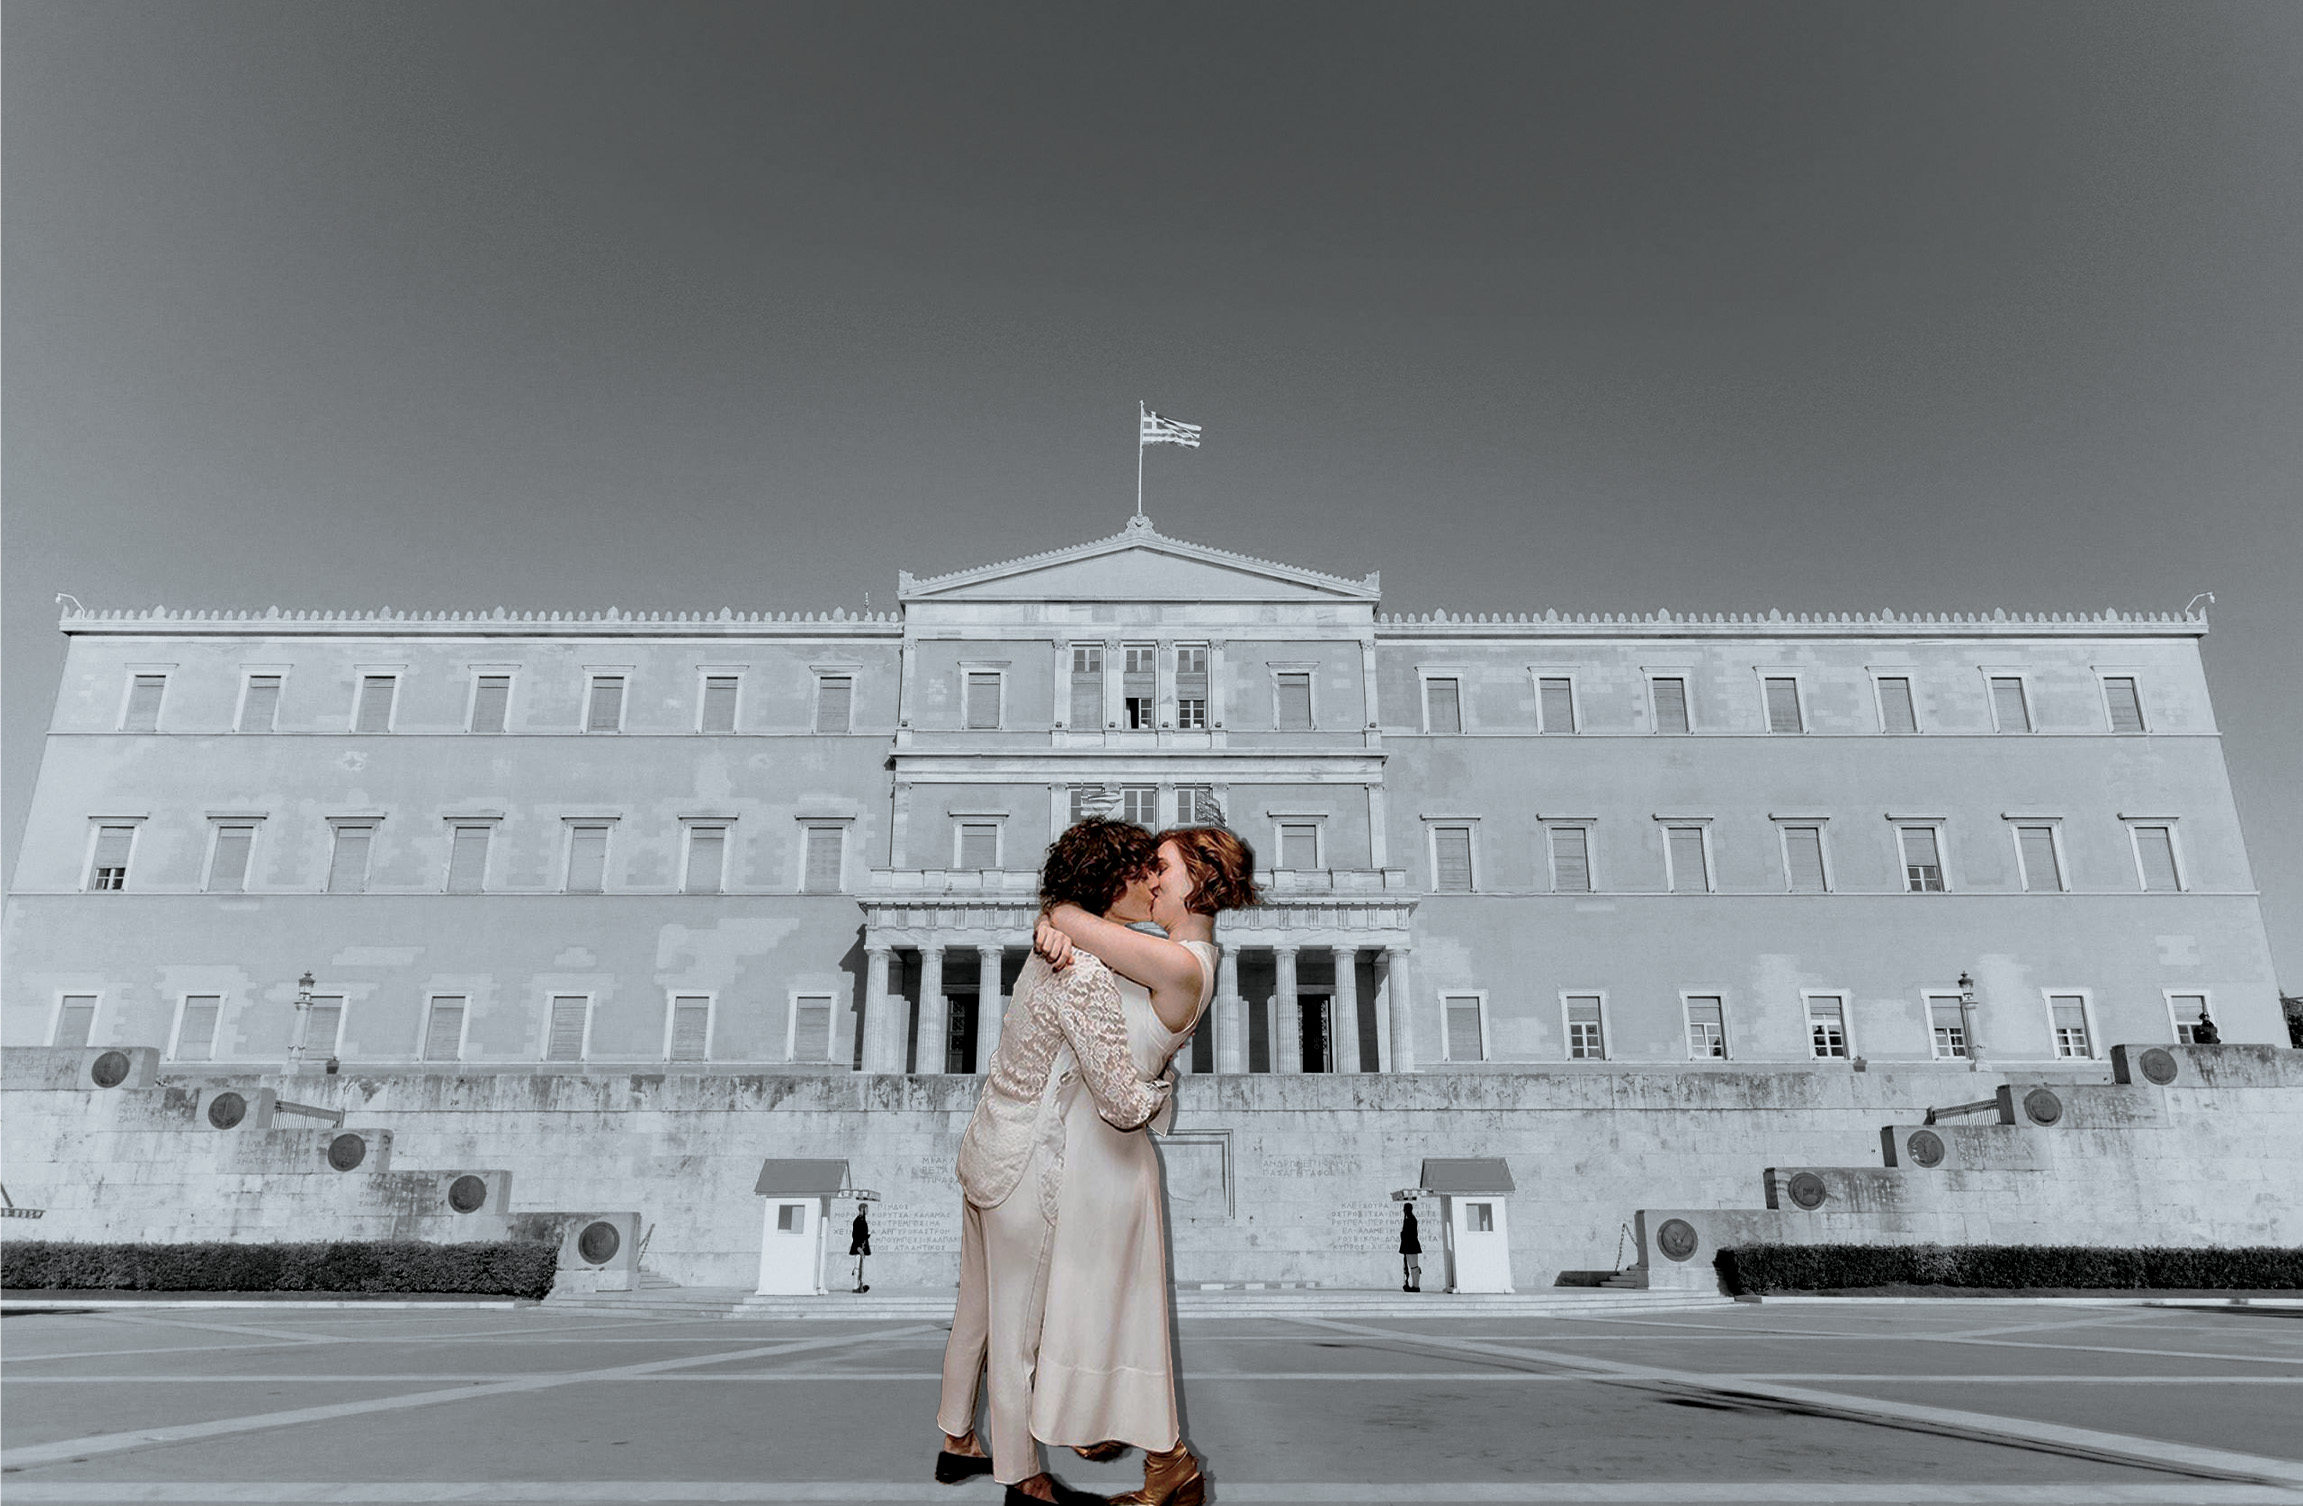 νομοσχέδιο για την ισότητα στον γάμο